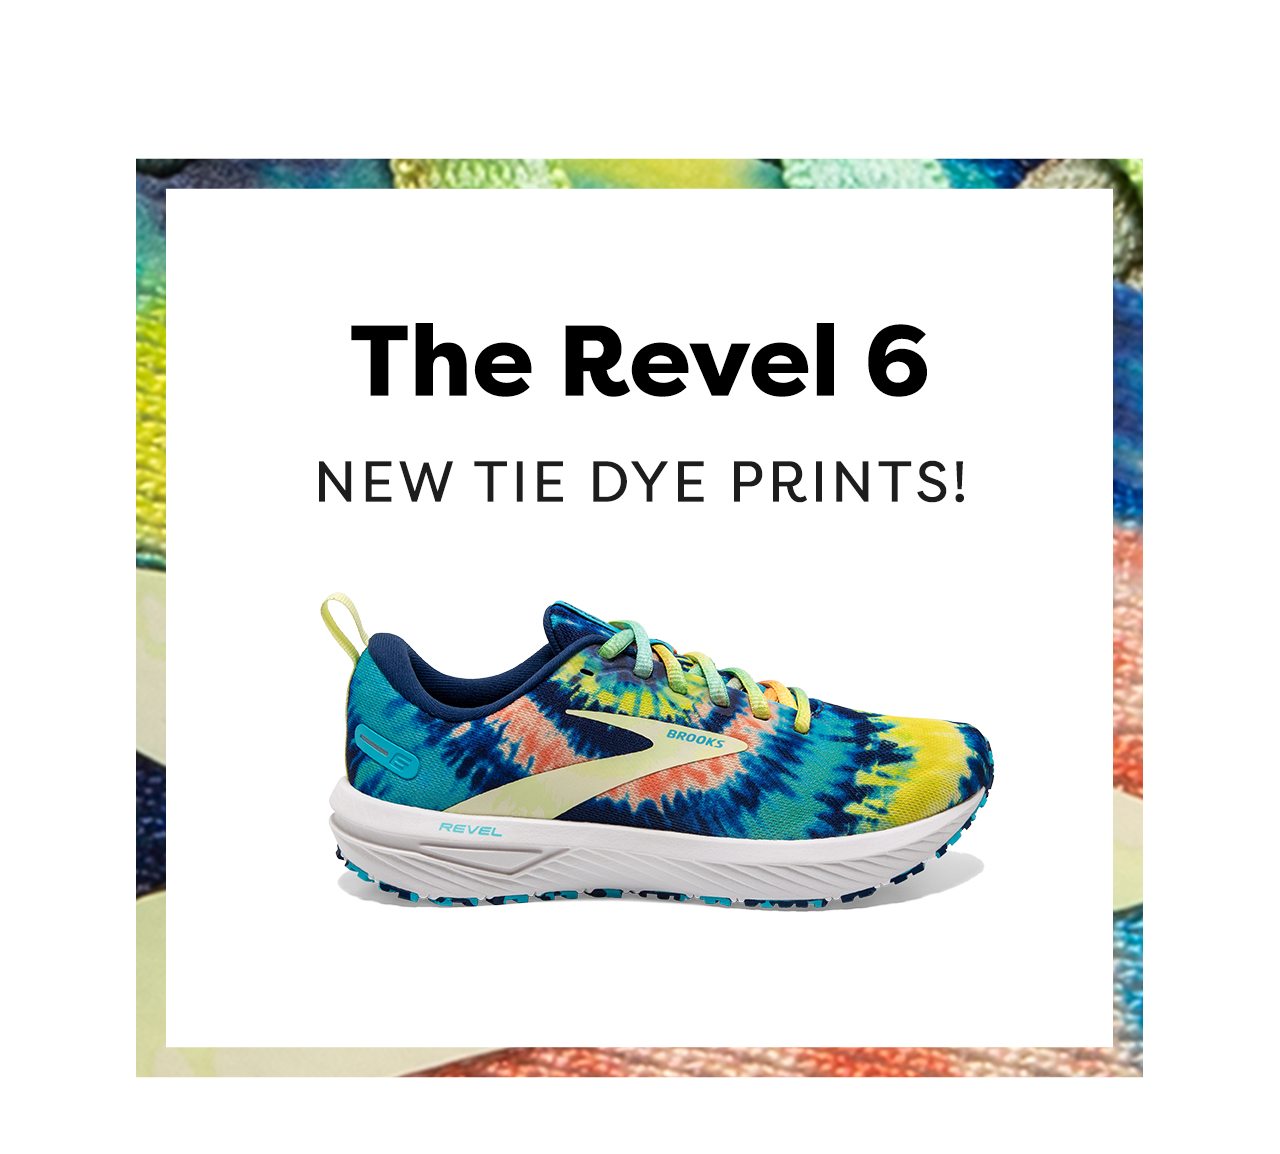 The Revel 6 - NEW TIE DYE PRINTS!